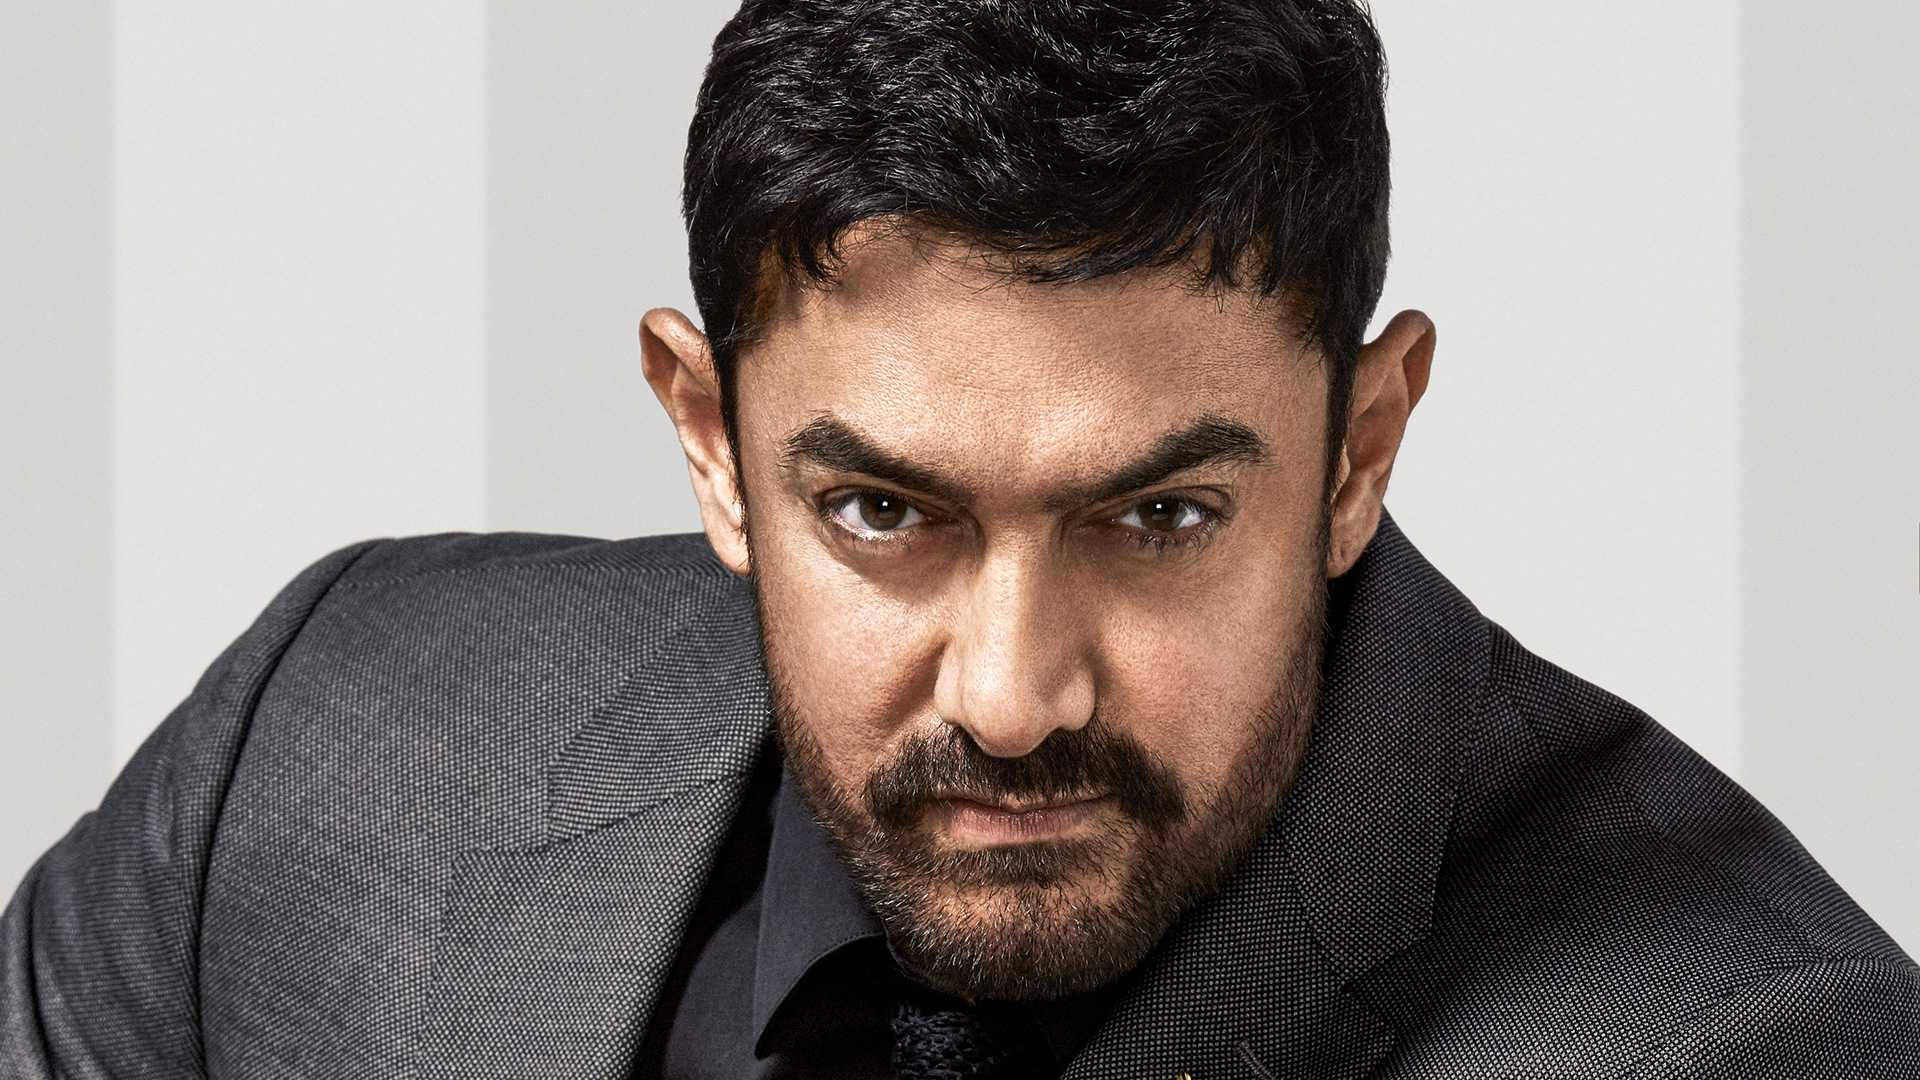 Aamirkhan Dunkelgrauer Anzug Wallpaper